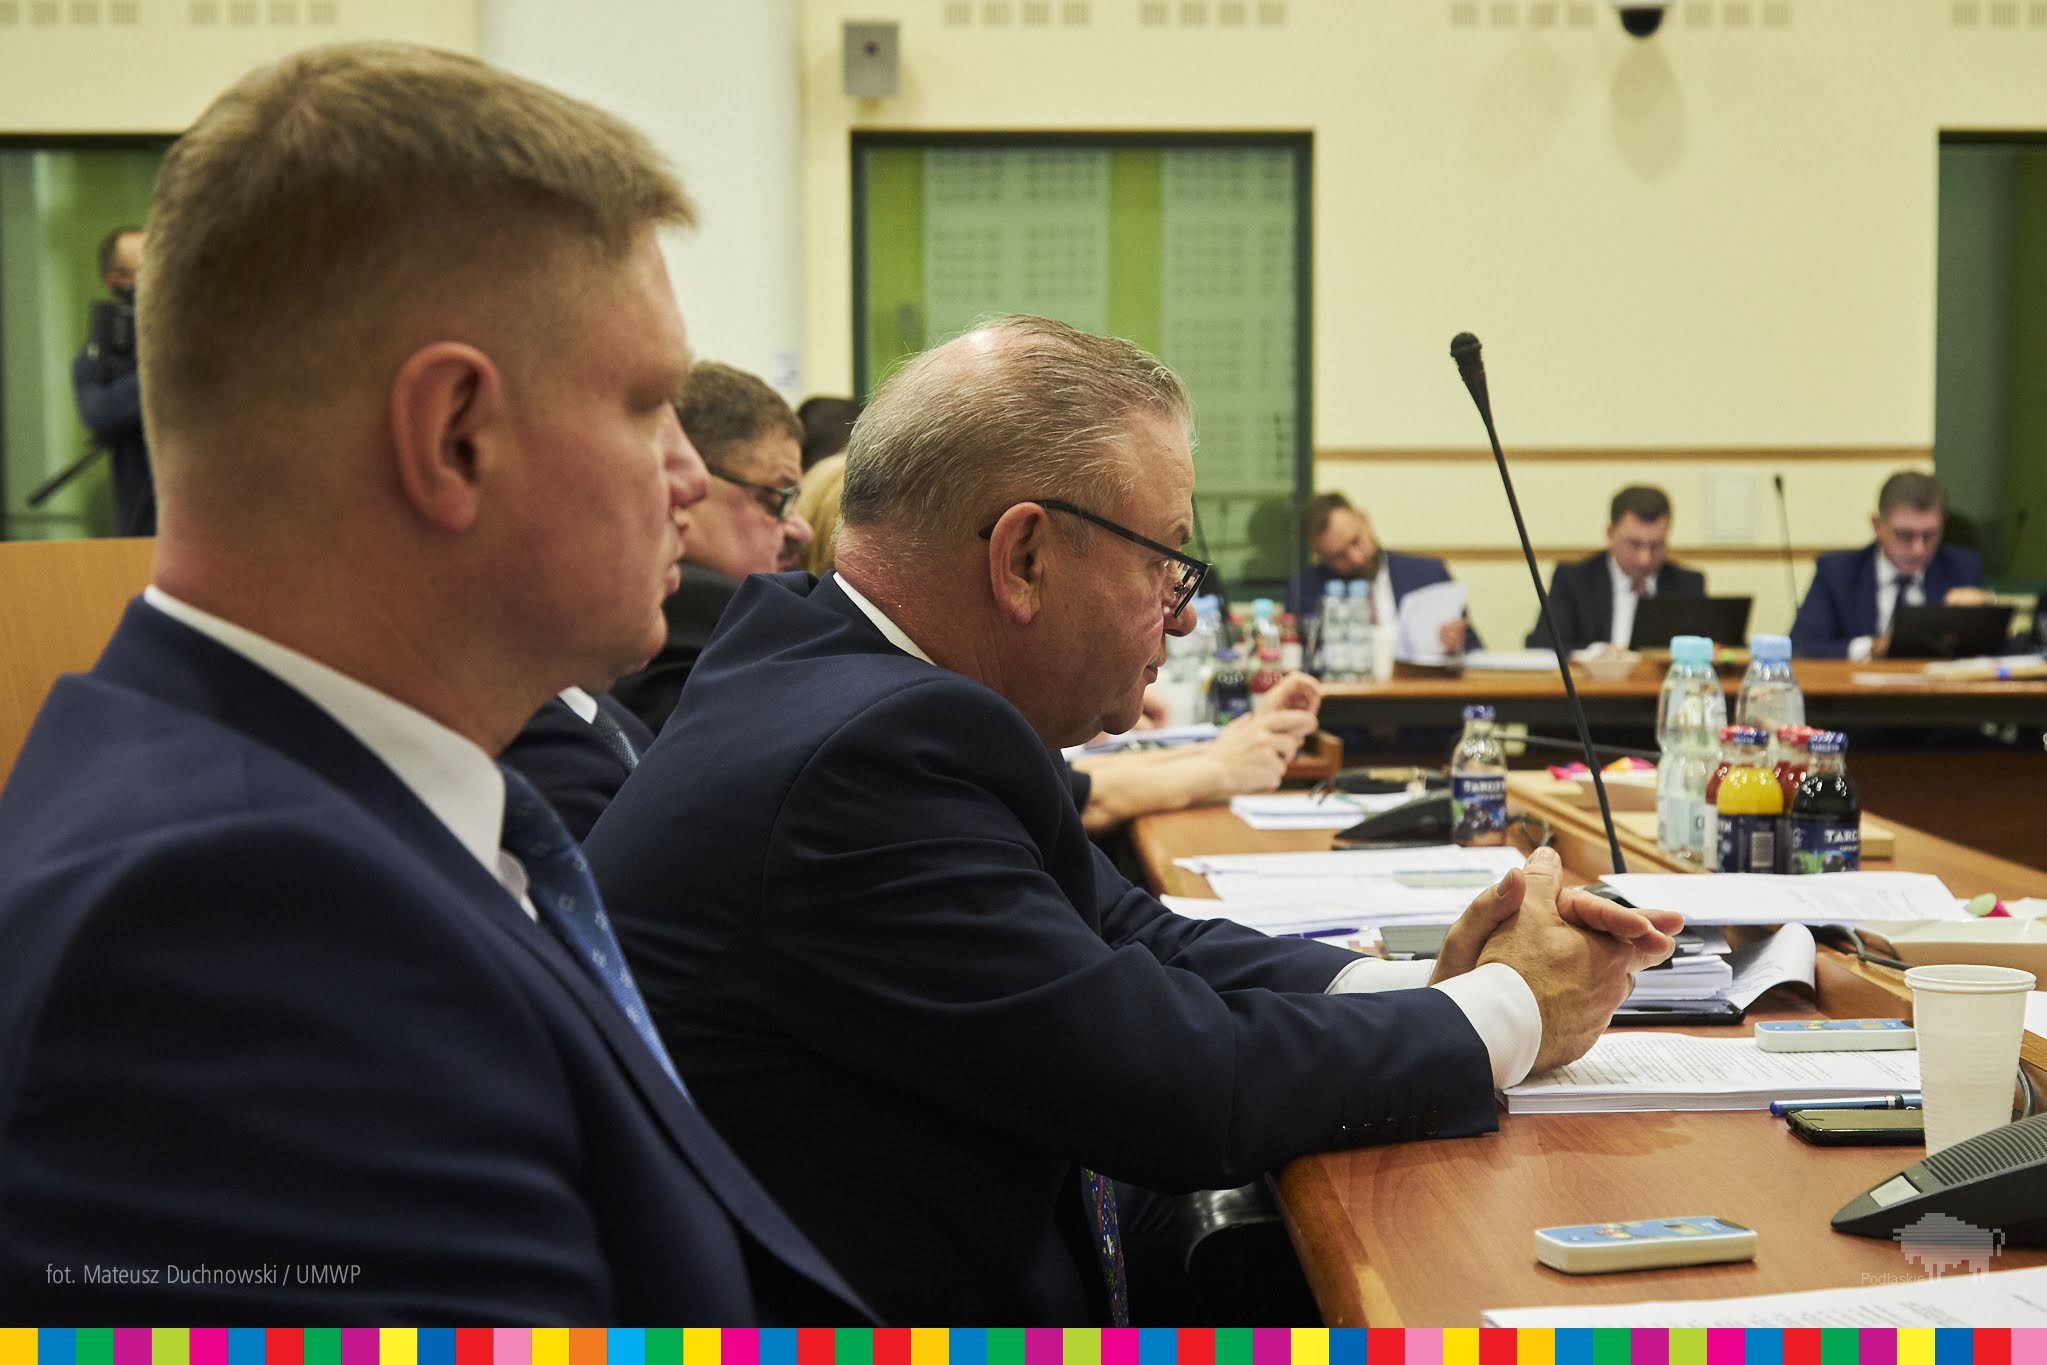 Budżet opracowany przez&nbsp;zarząd województwa uzyskał poparcie 17 radnych /fot. M. Duchnowski UMWP/